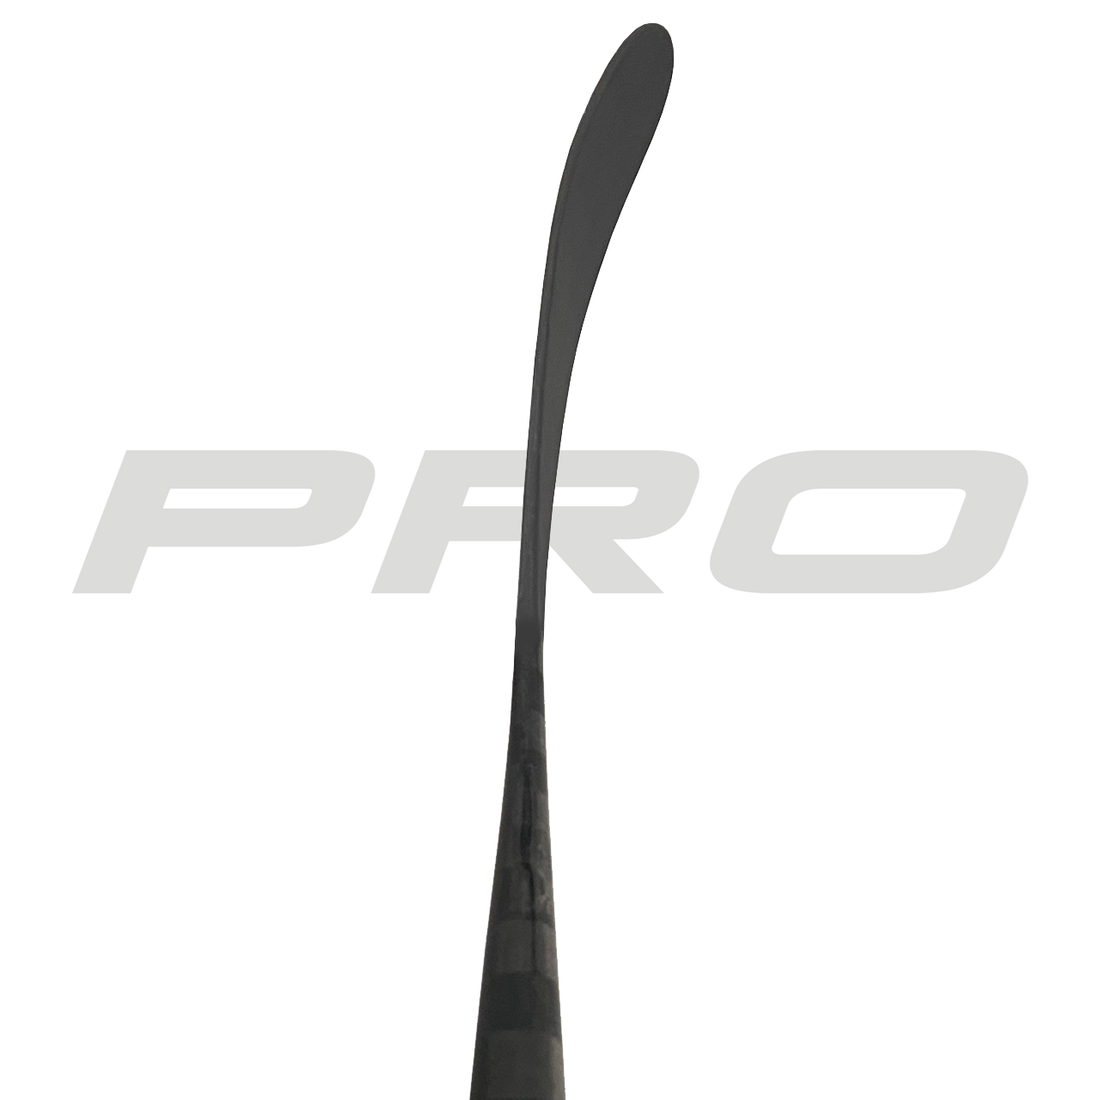 PRO272 (ST: Kovalev Pro) - Red Line (375 G) - Pro Stock Hockey Stick - Left